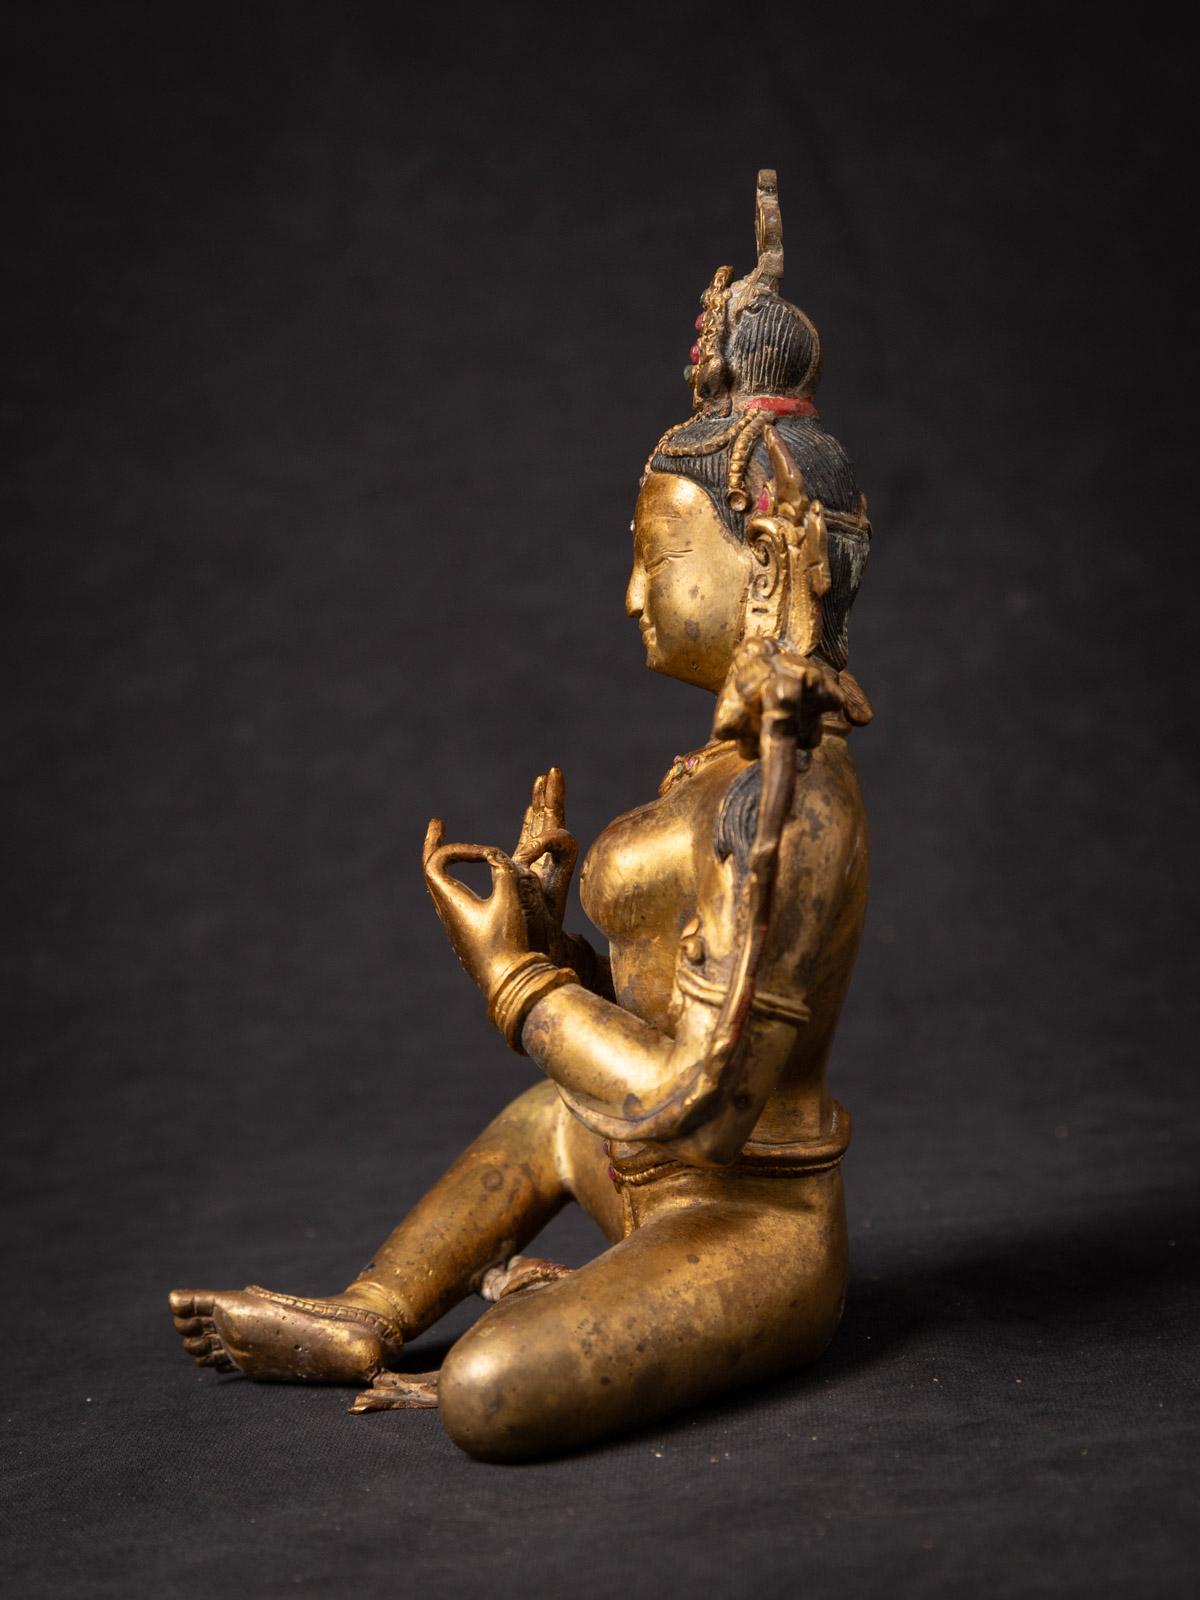 Ancienne statue en bronze de Tara verte népalaise
Matière : bronze
20,3 cm de haut
14,1 cm de large et 12,2 cm de profondeur
Feu doré avec de l'or 24 krt.
Dharmachakra mudra
Milieu du XXe siècle
Incrustation de pierres précieuses
Poids : 1,31